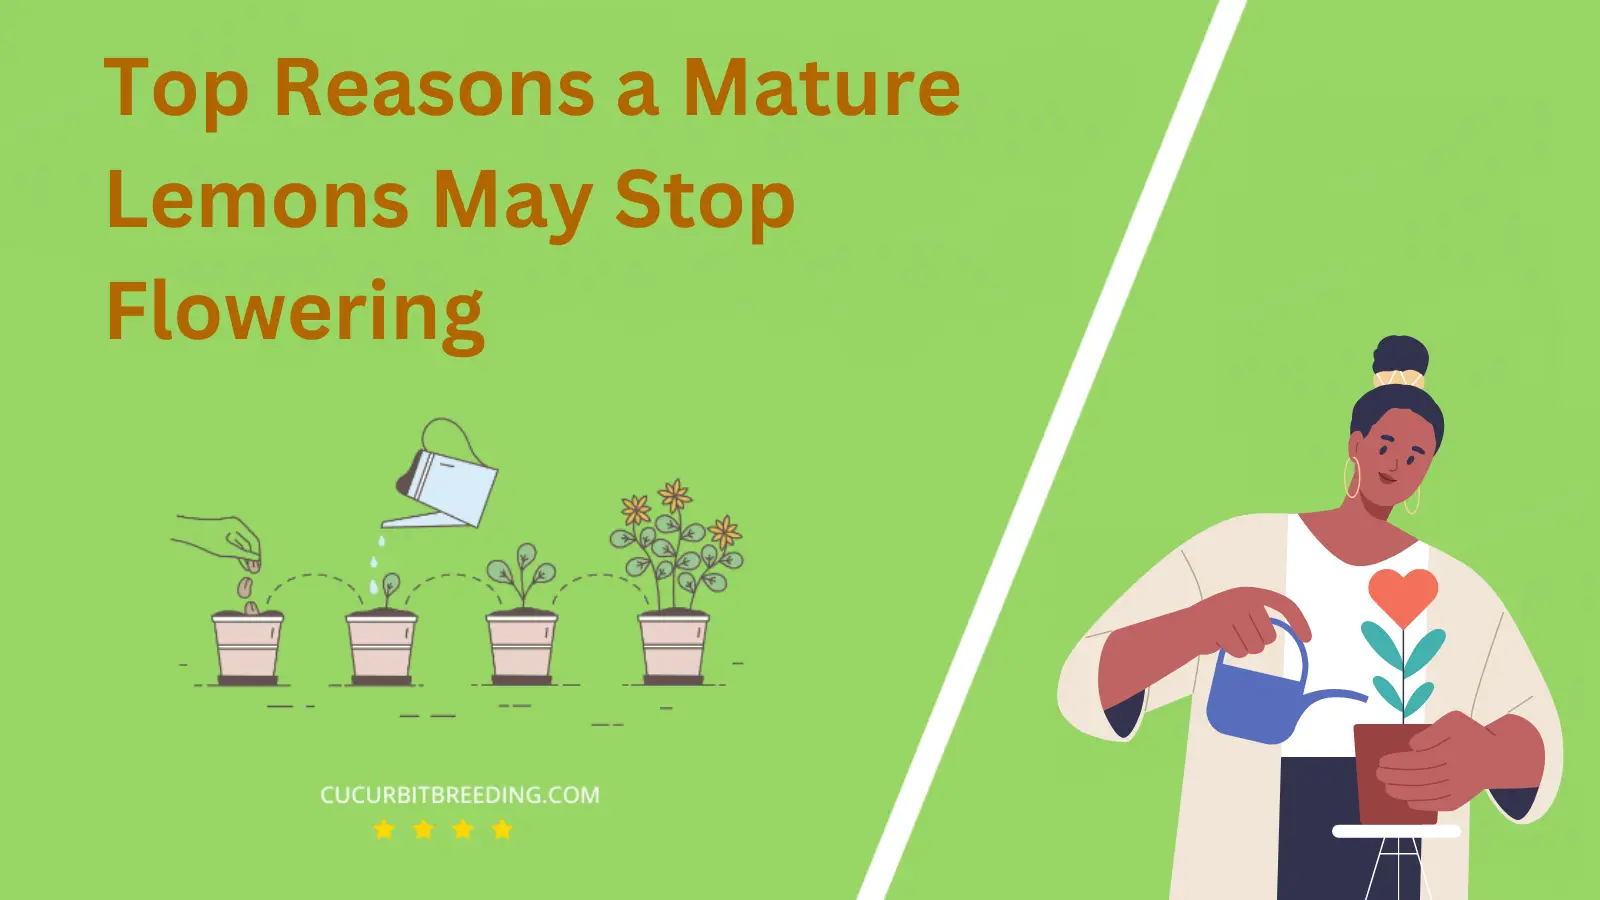 Top Reasons a Mature Lemons May Stop Flowering